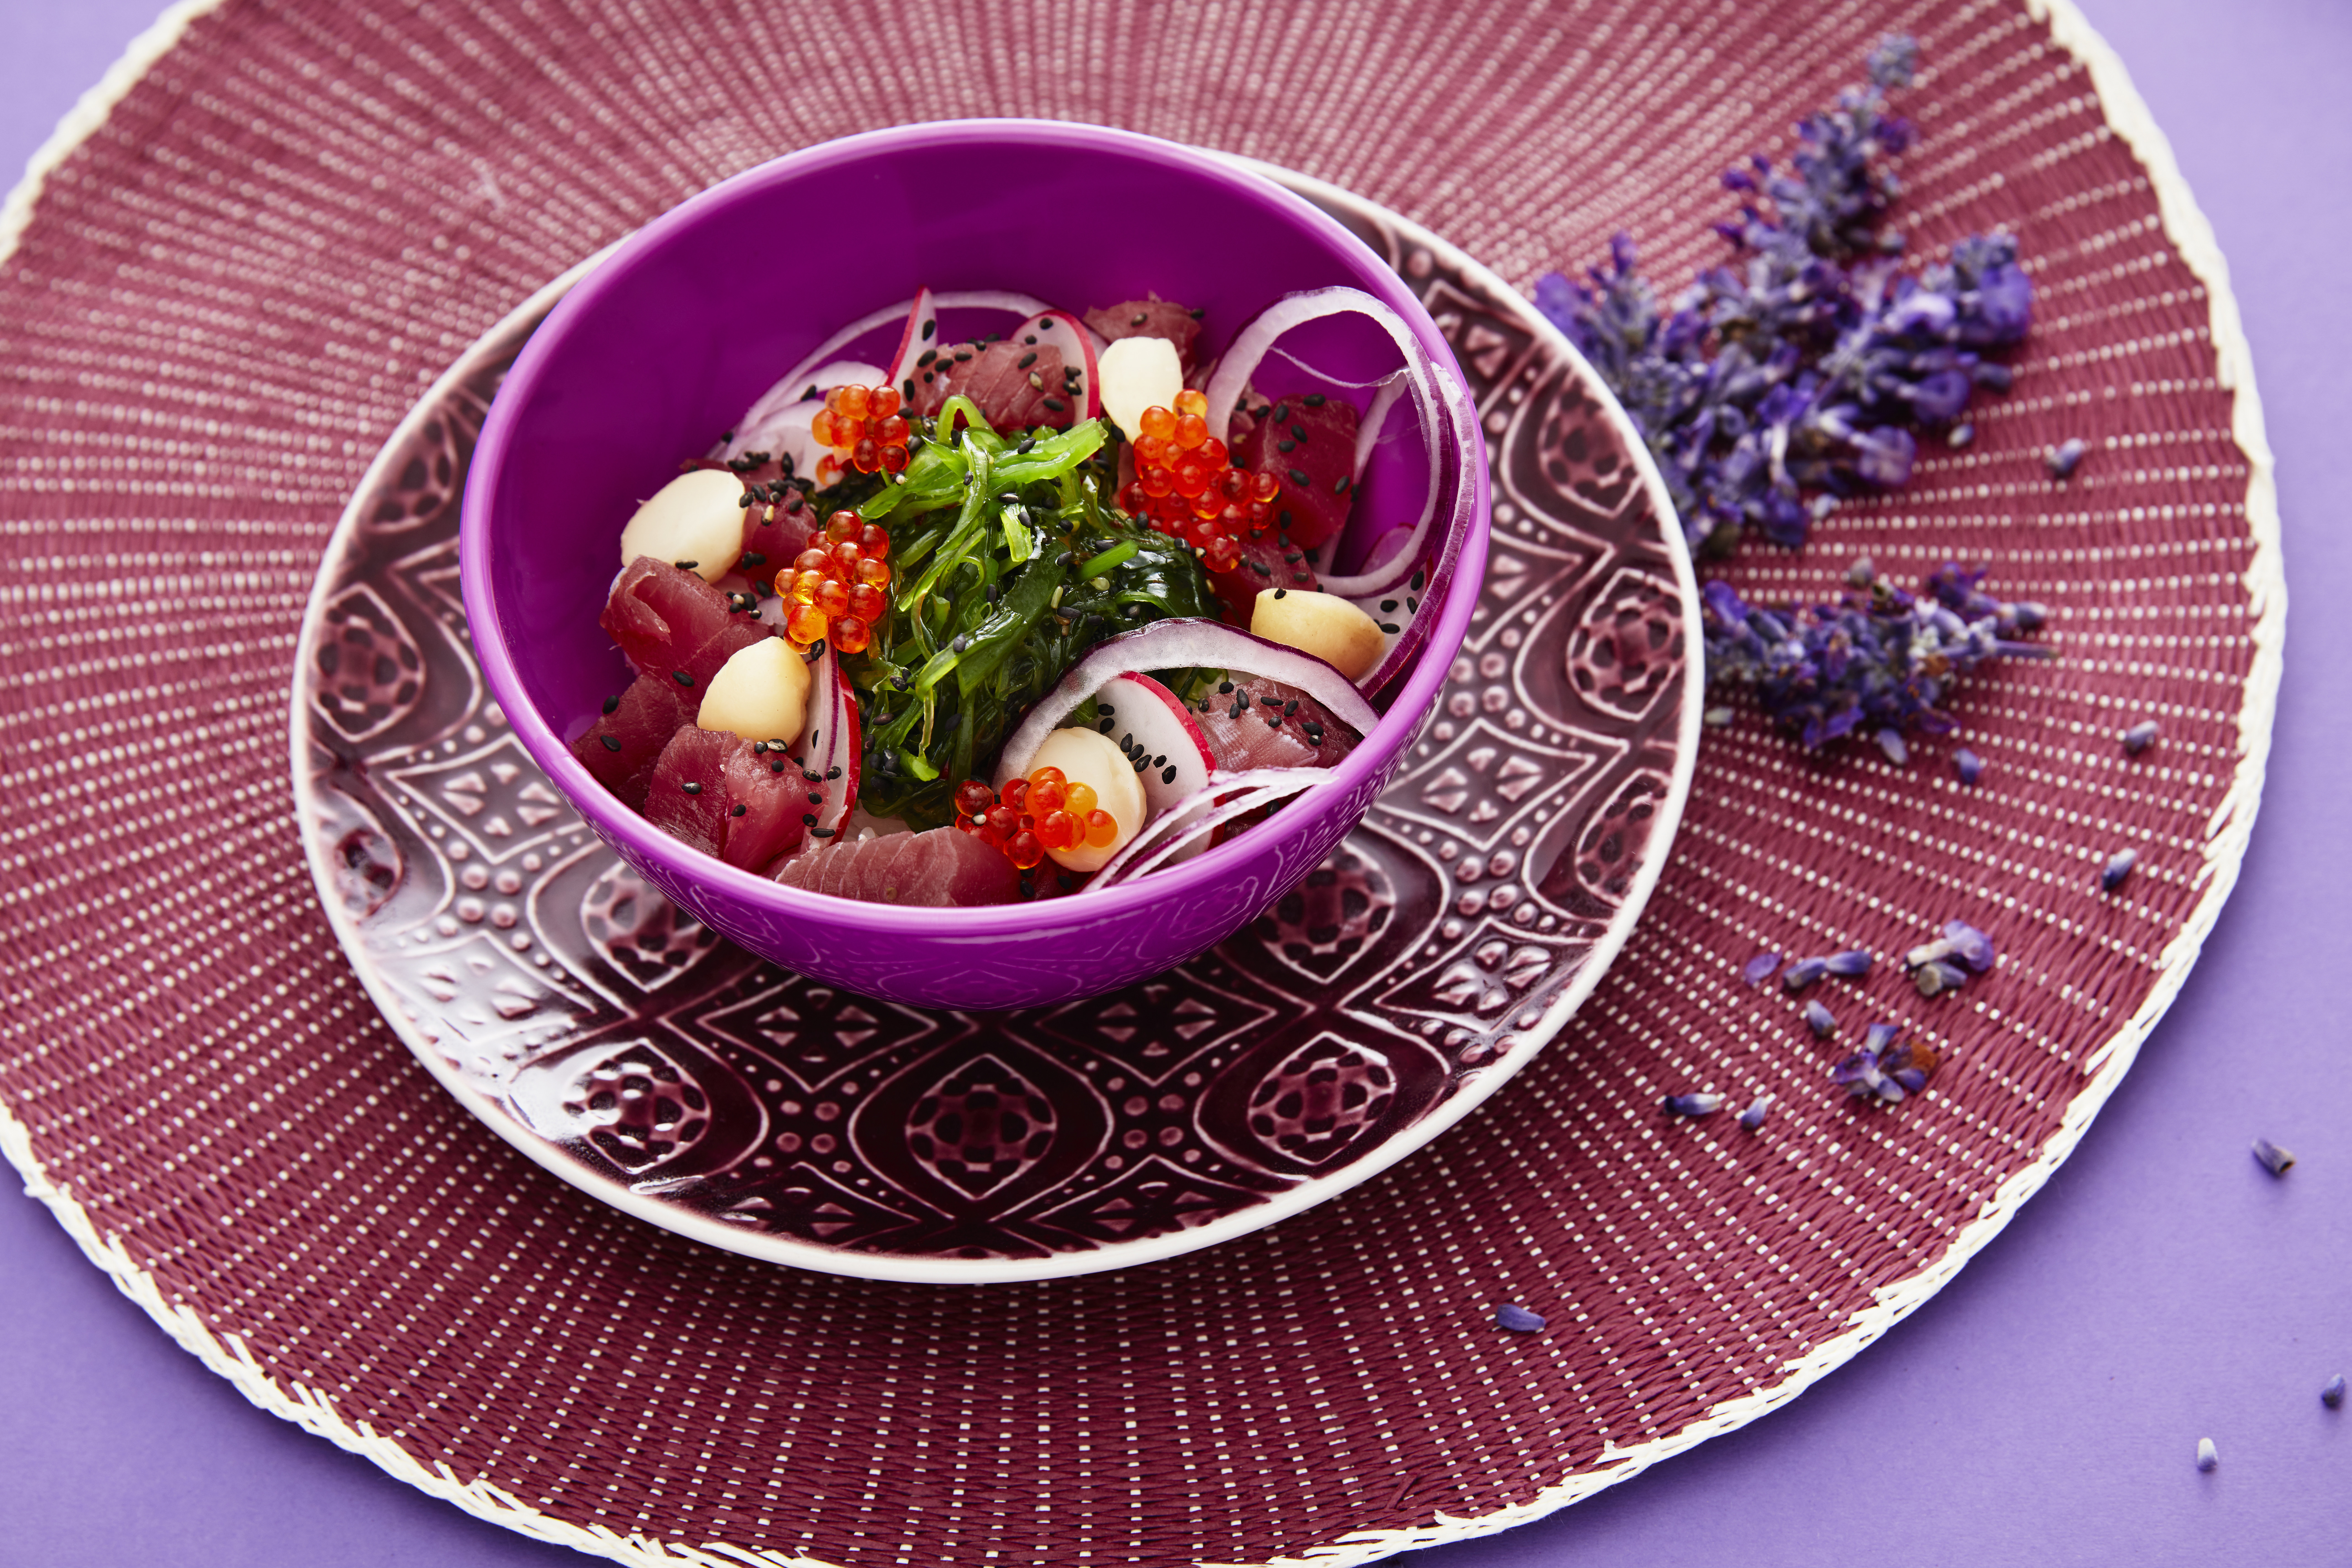 Poké bowl med  tonfisk, rödlök och rom